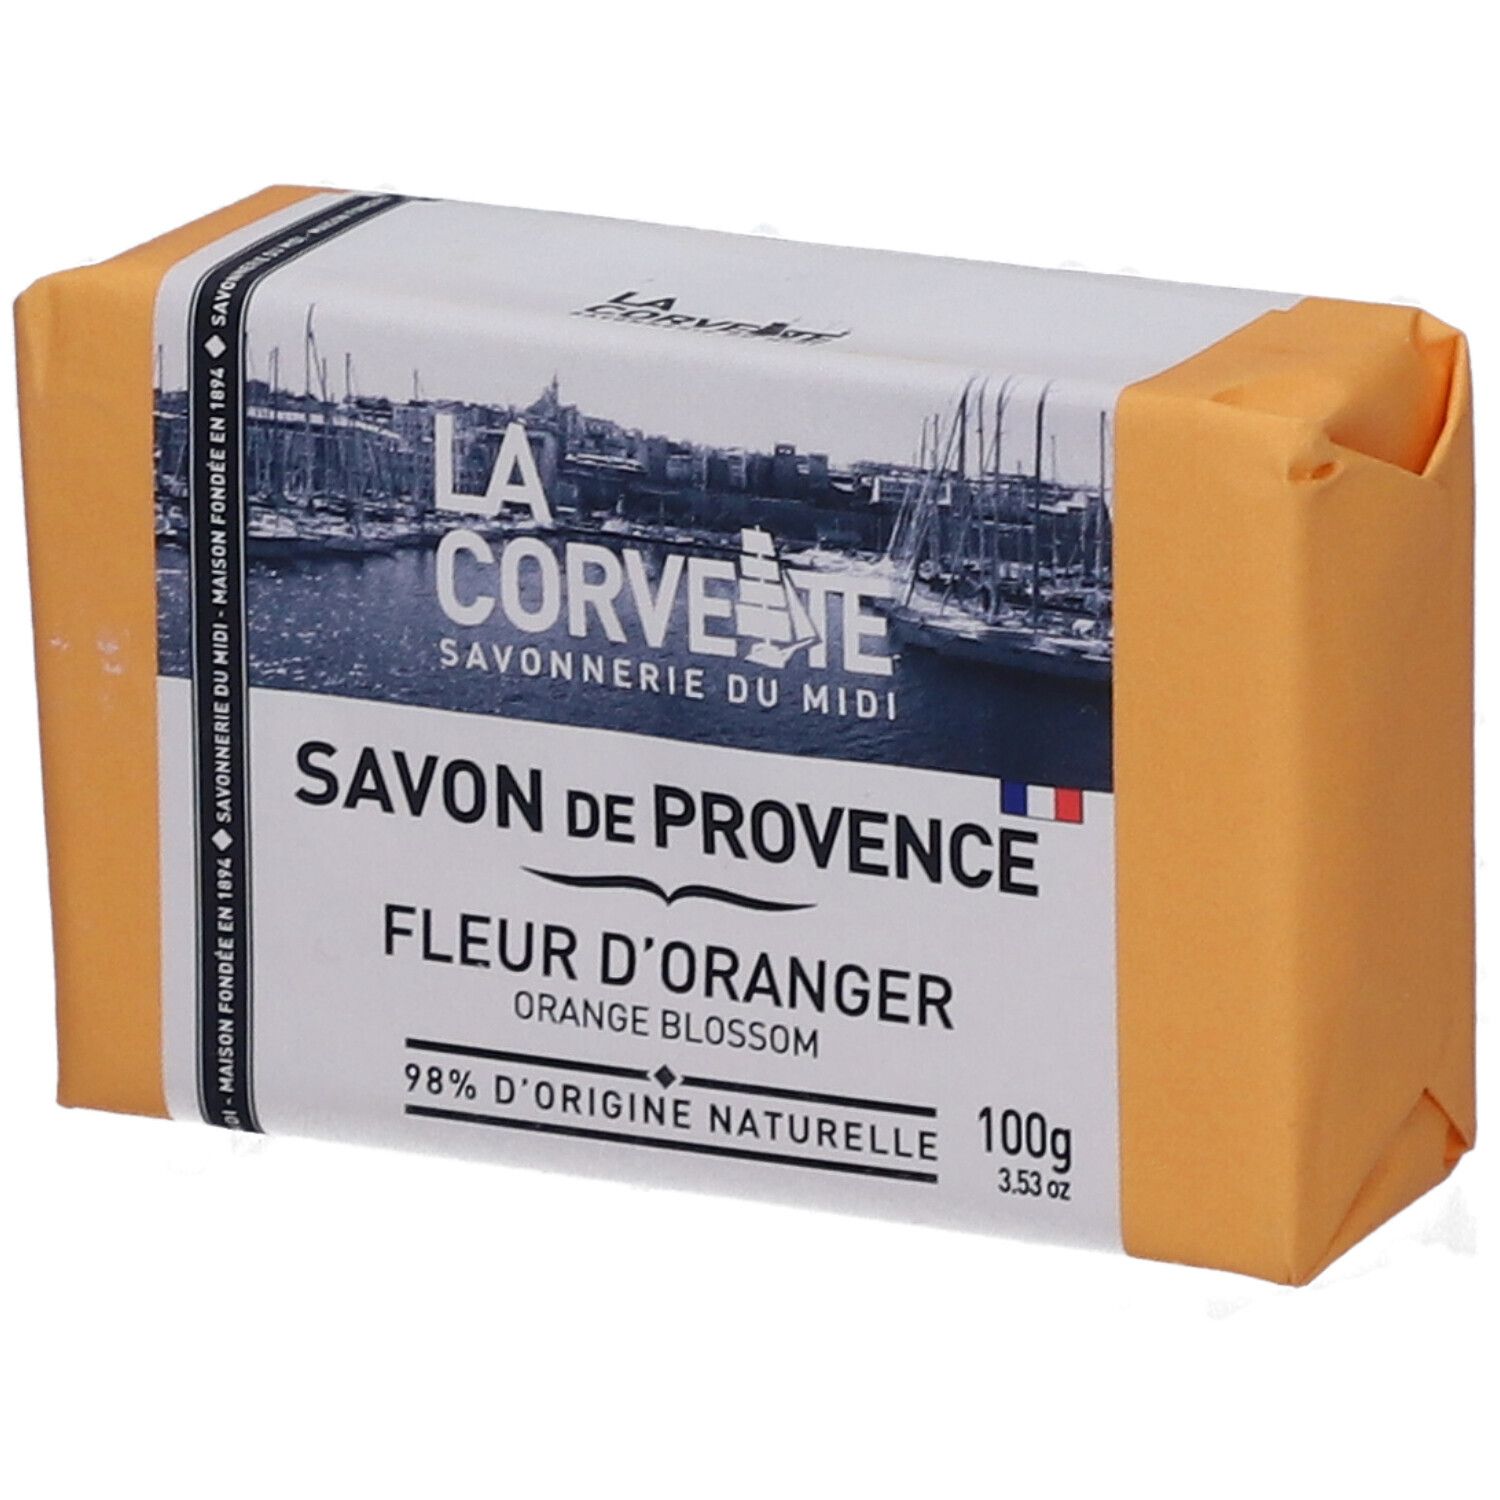 LA Corvette Savon de Provence Fleur d'oranger